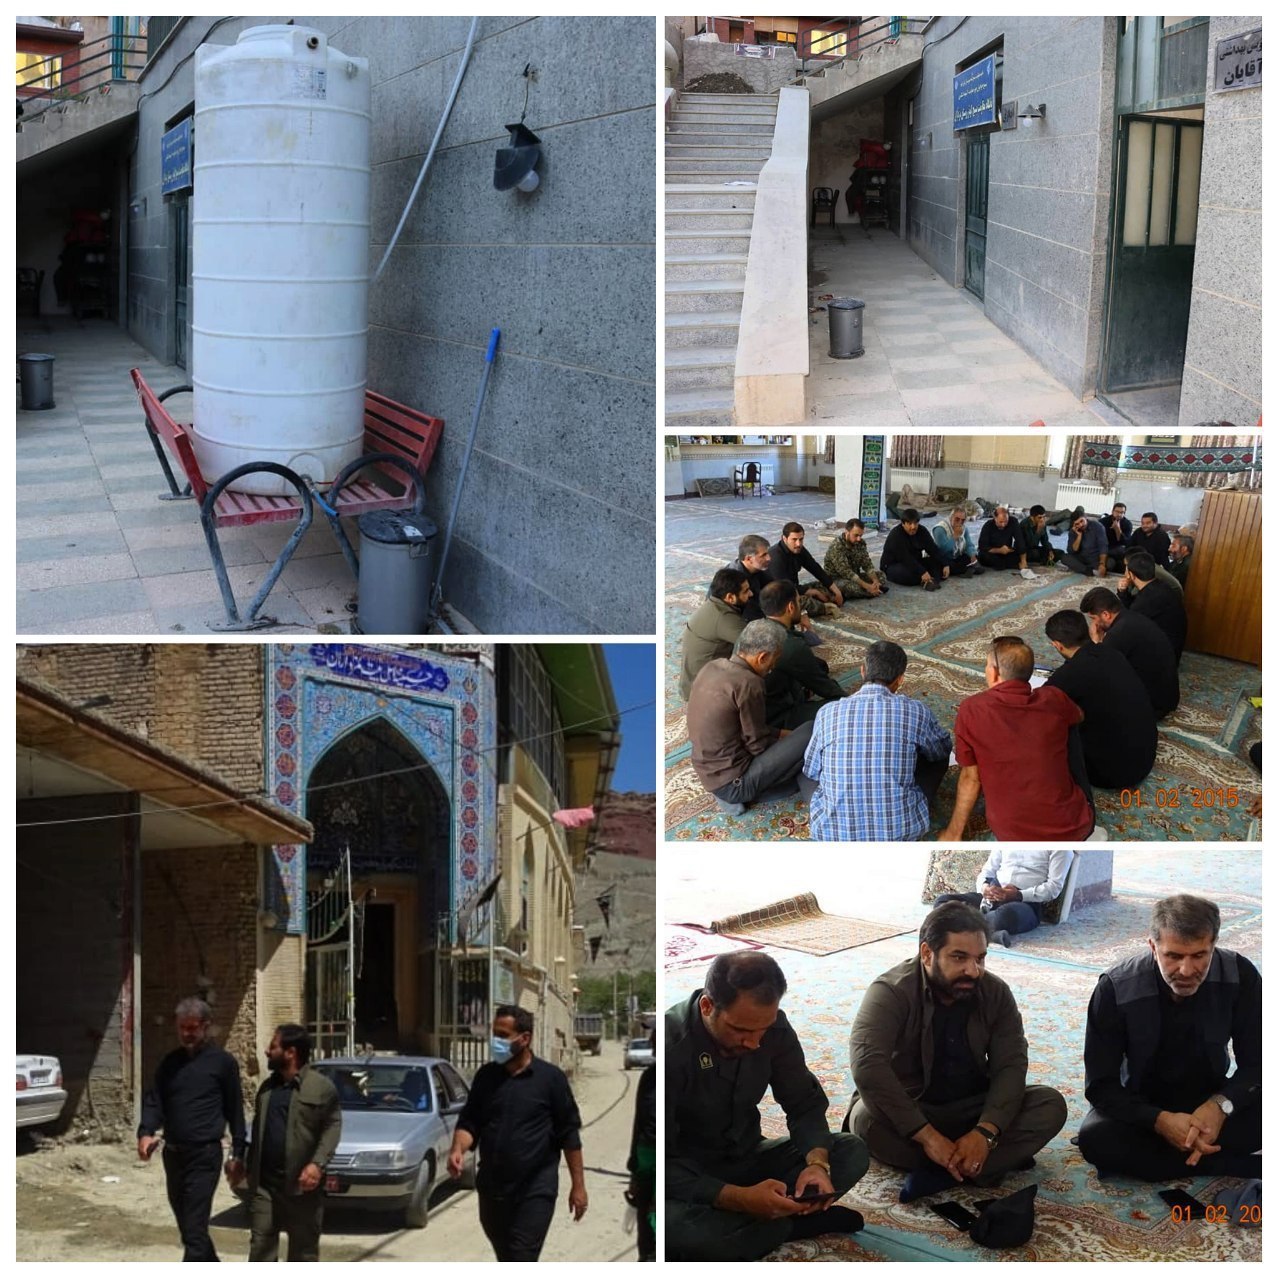 تعمیر تاسیسات مسجد جامع مزداران به همت تیم امداد رسانی شهرداری پرند